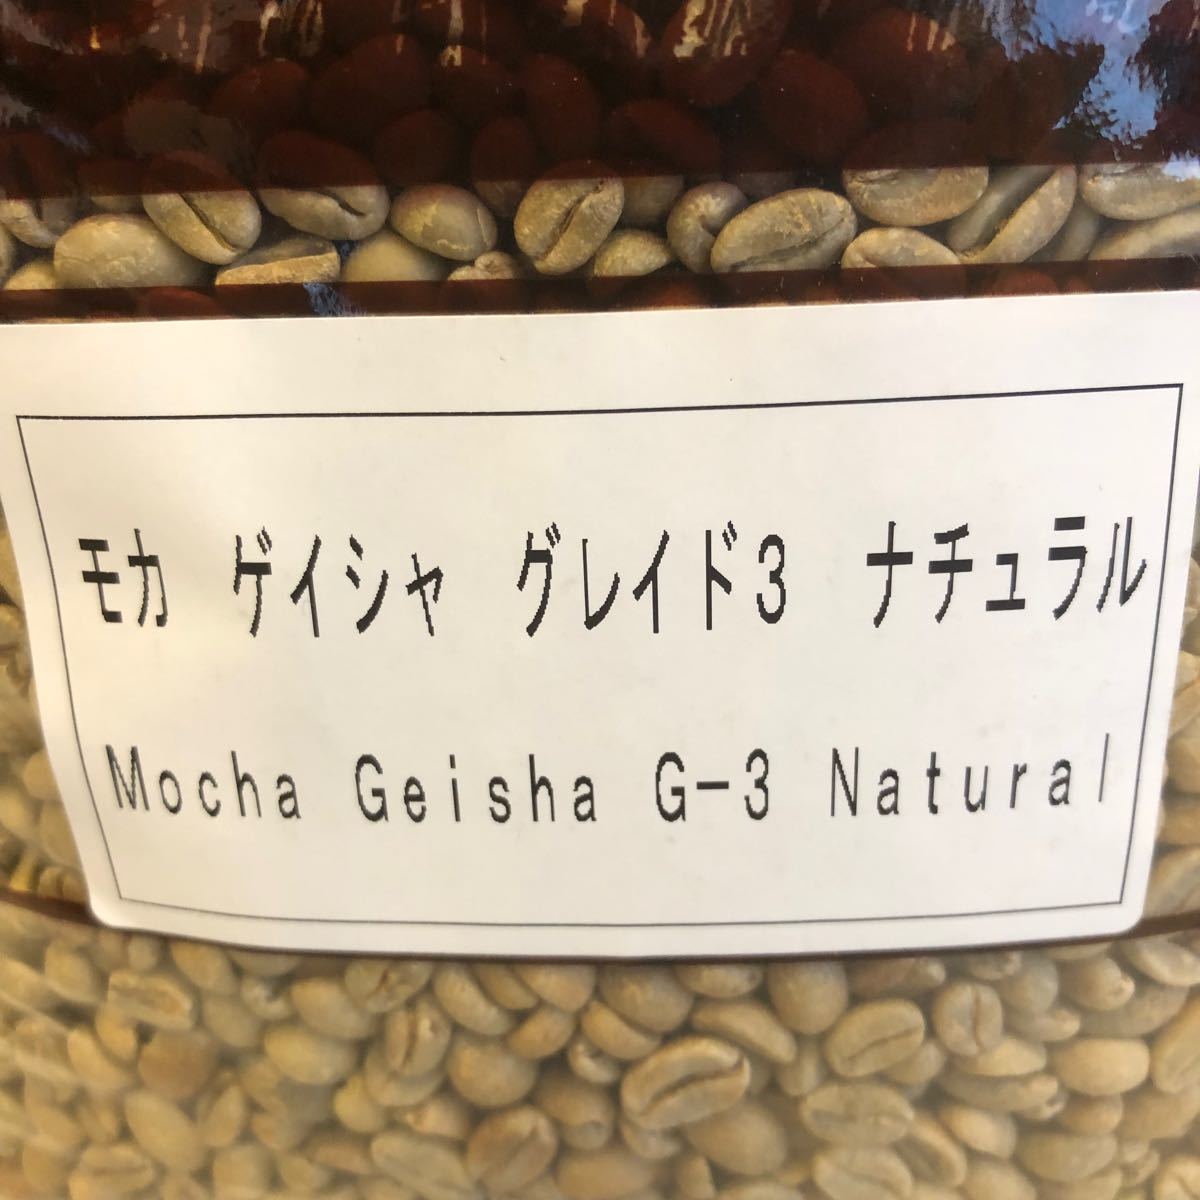 コーヒー豆 エチオピア モカ ゲイシャ 800g 焙煎用生豆 生豆 珈琲 コーヒー豆 コーヒー生豆